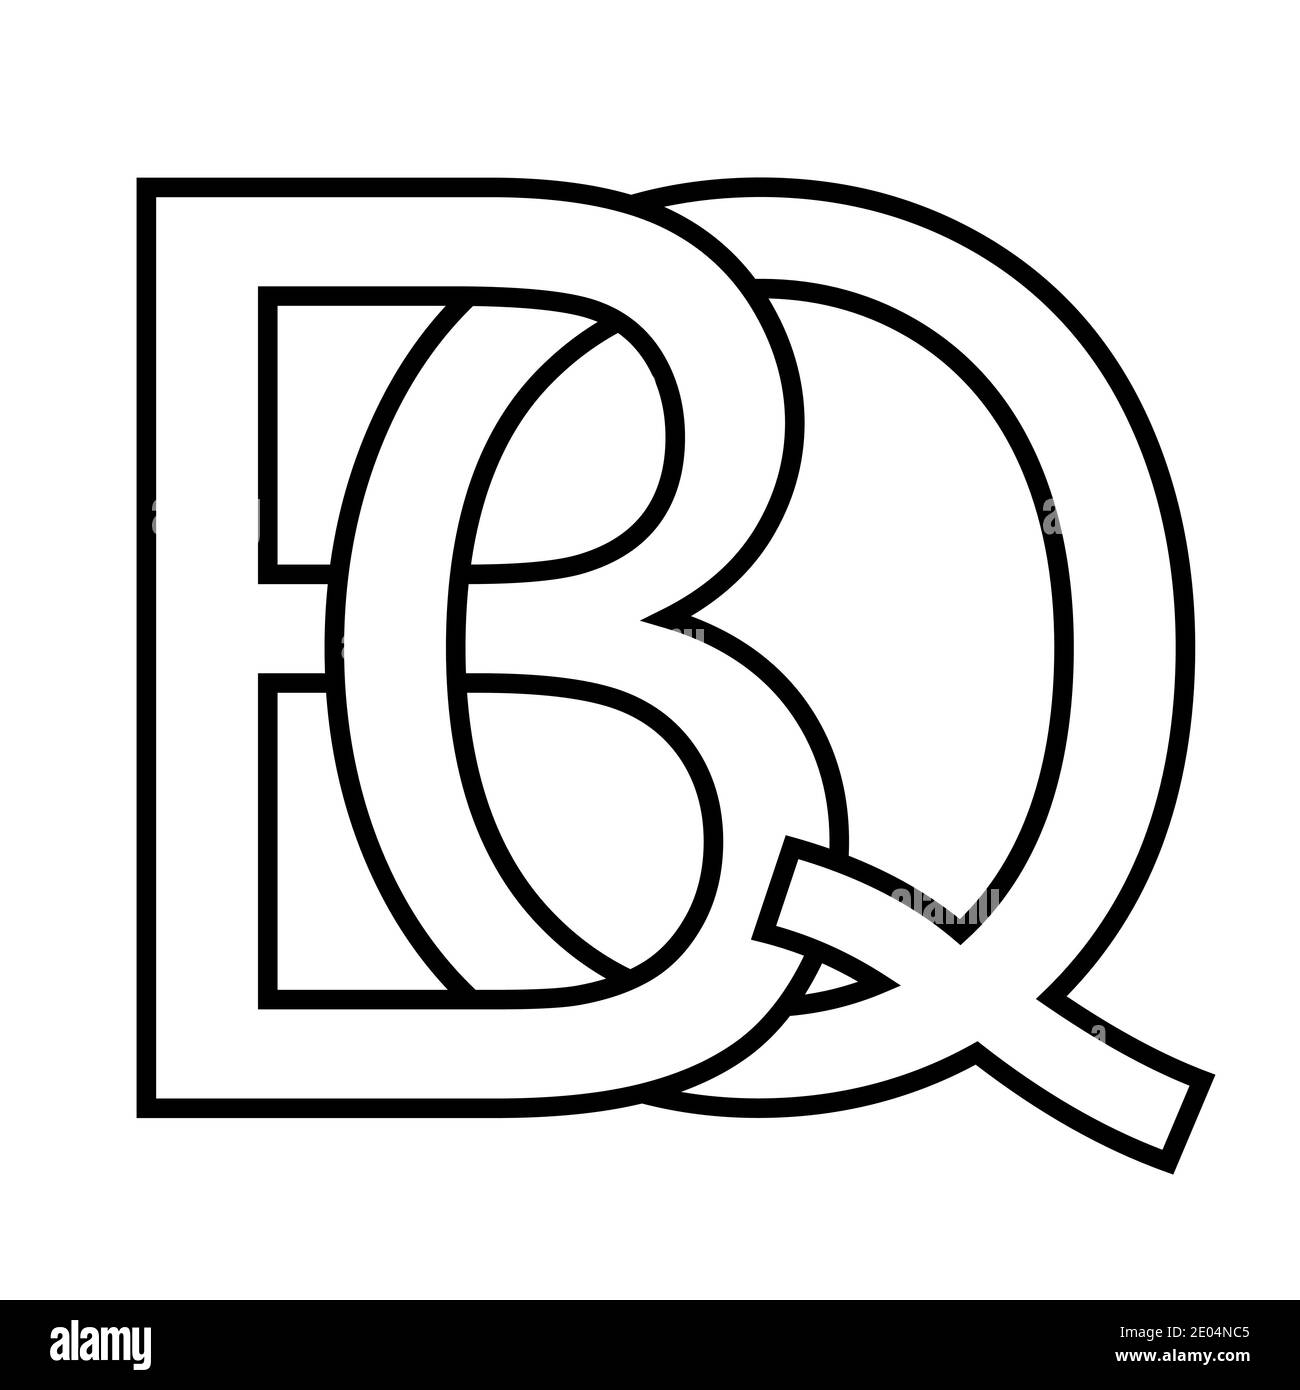 Logo Zeichen bq qb Symbol Zeichen zwei Zeilensprungbuchstaben B und Q Vektor-Logo bq, qb erste Großbuchstaben Muster Alphabet b, q Stock Vektor